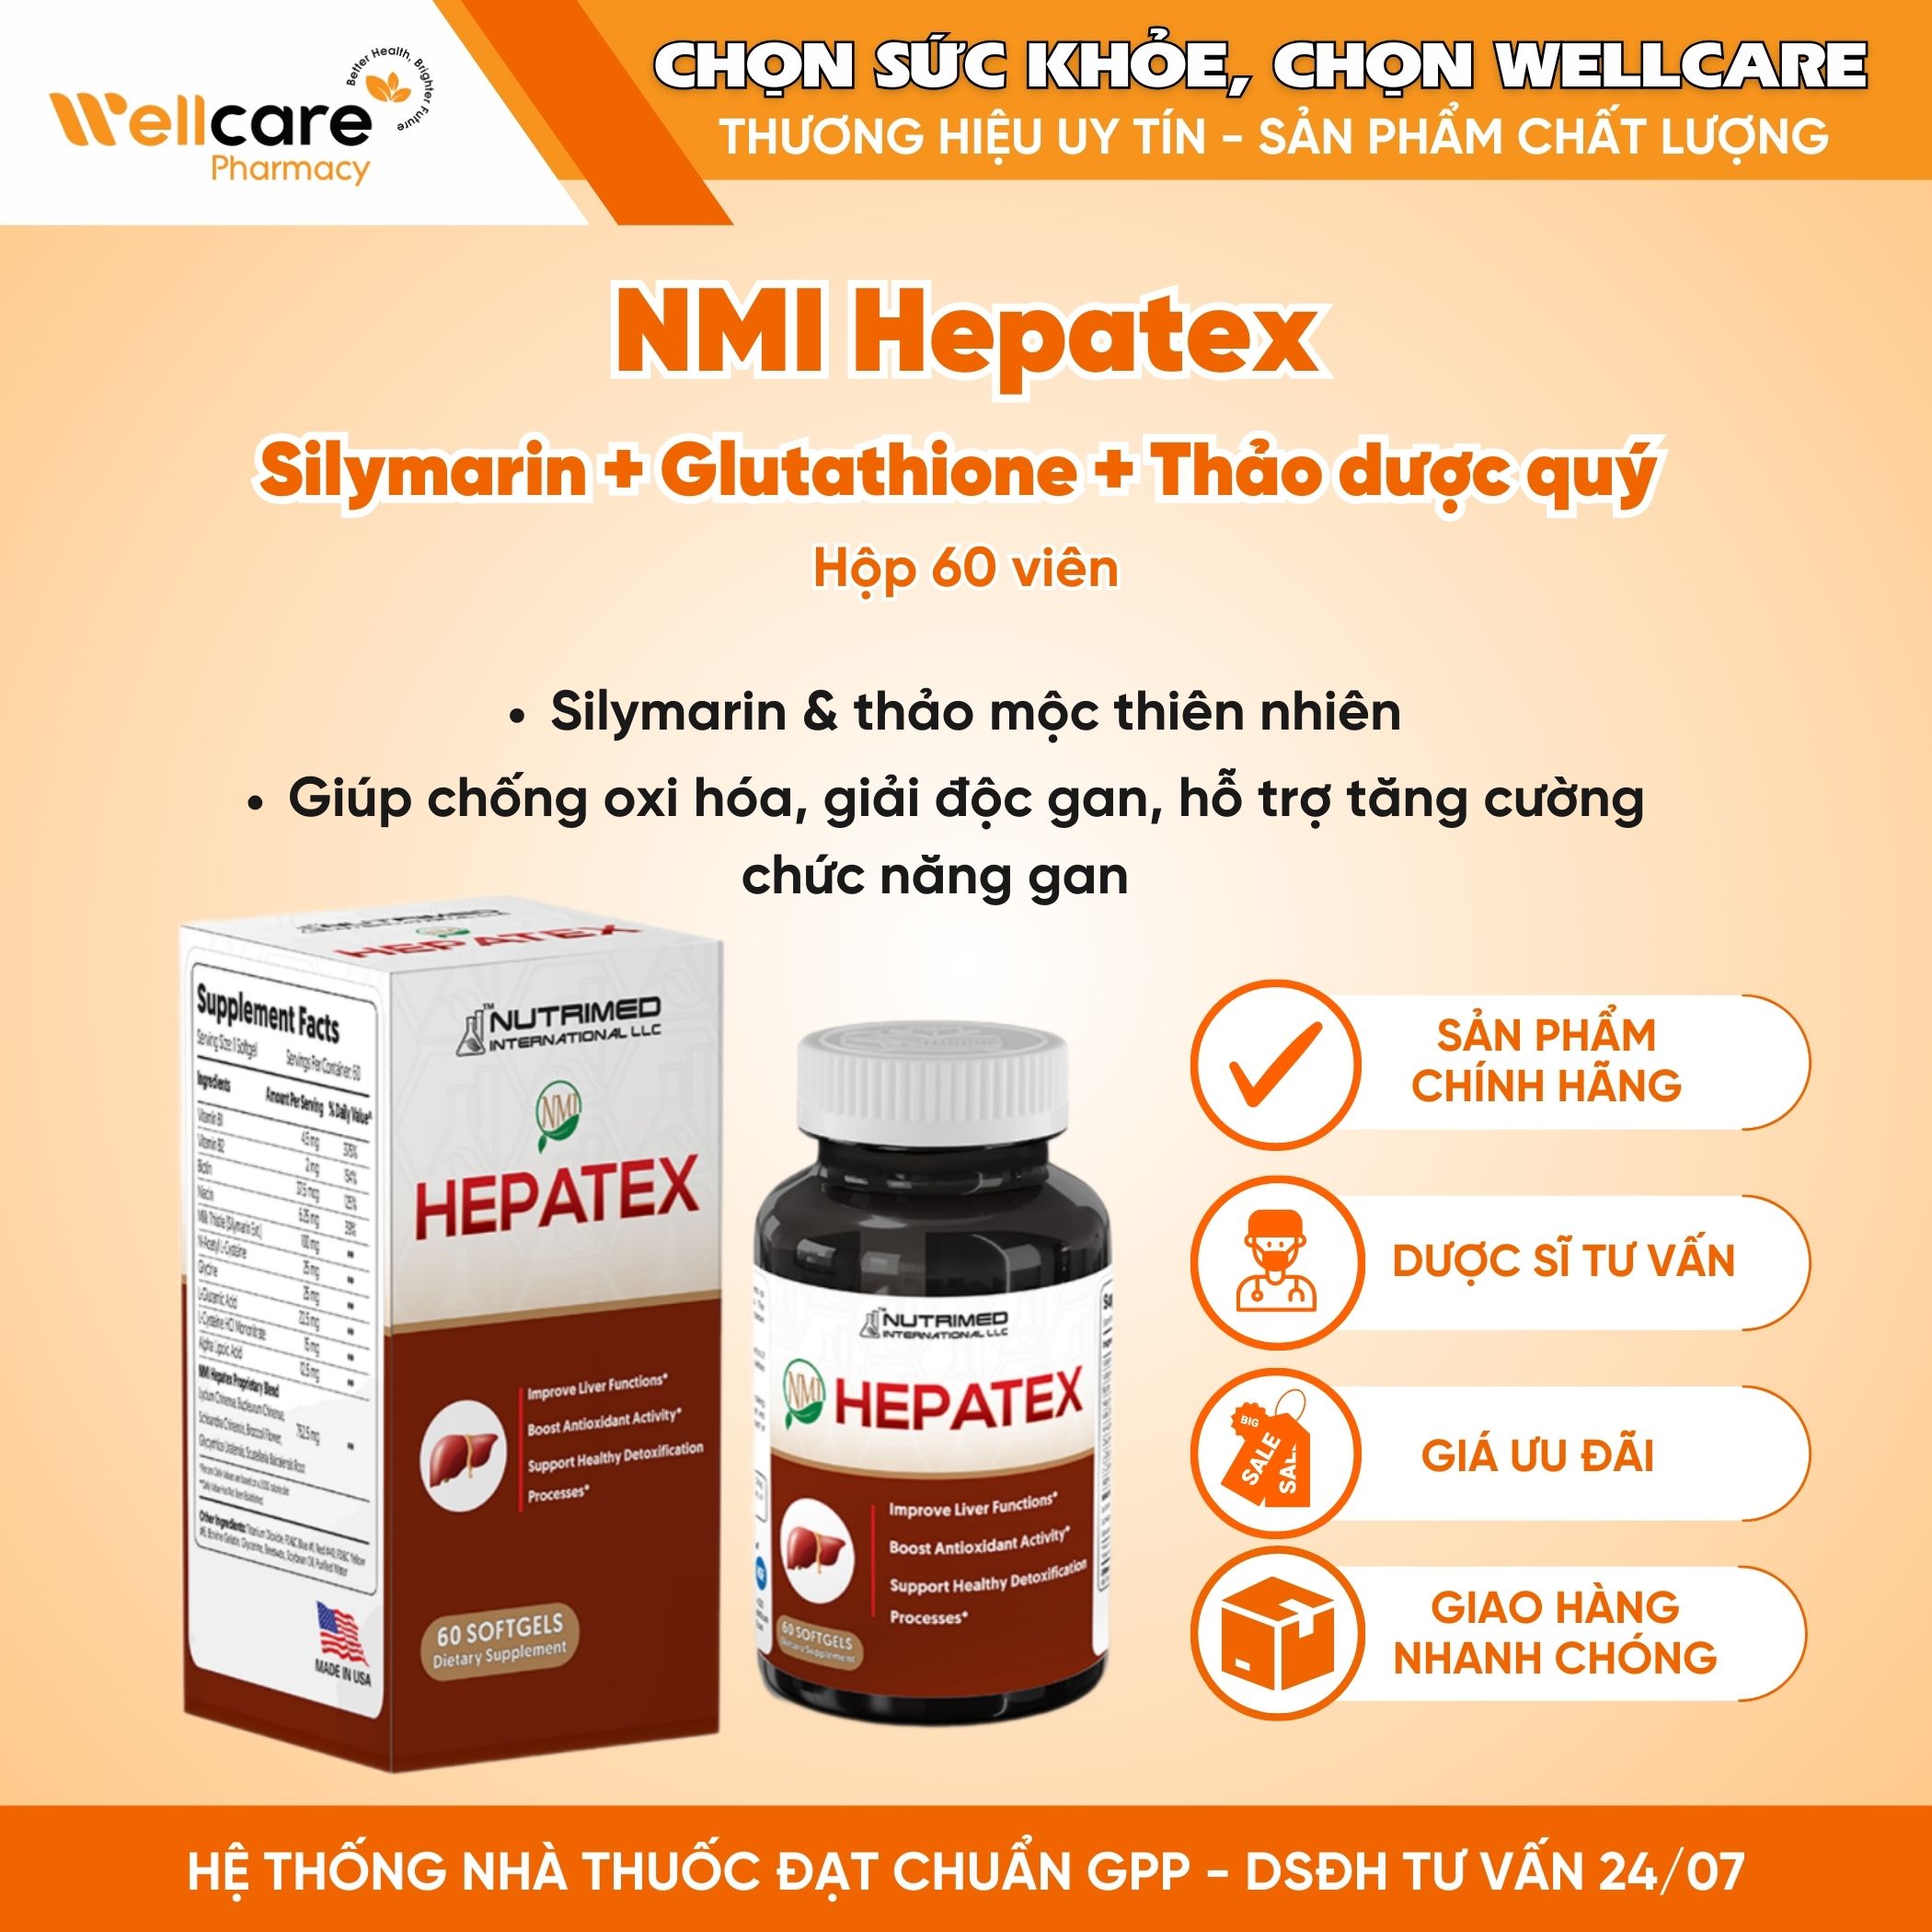 NMI Hepatex – Viên uống hỗ trợ tăng cường chức năng gan (Hộp 60 viên)